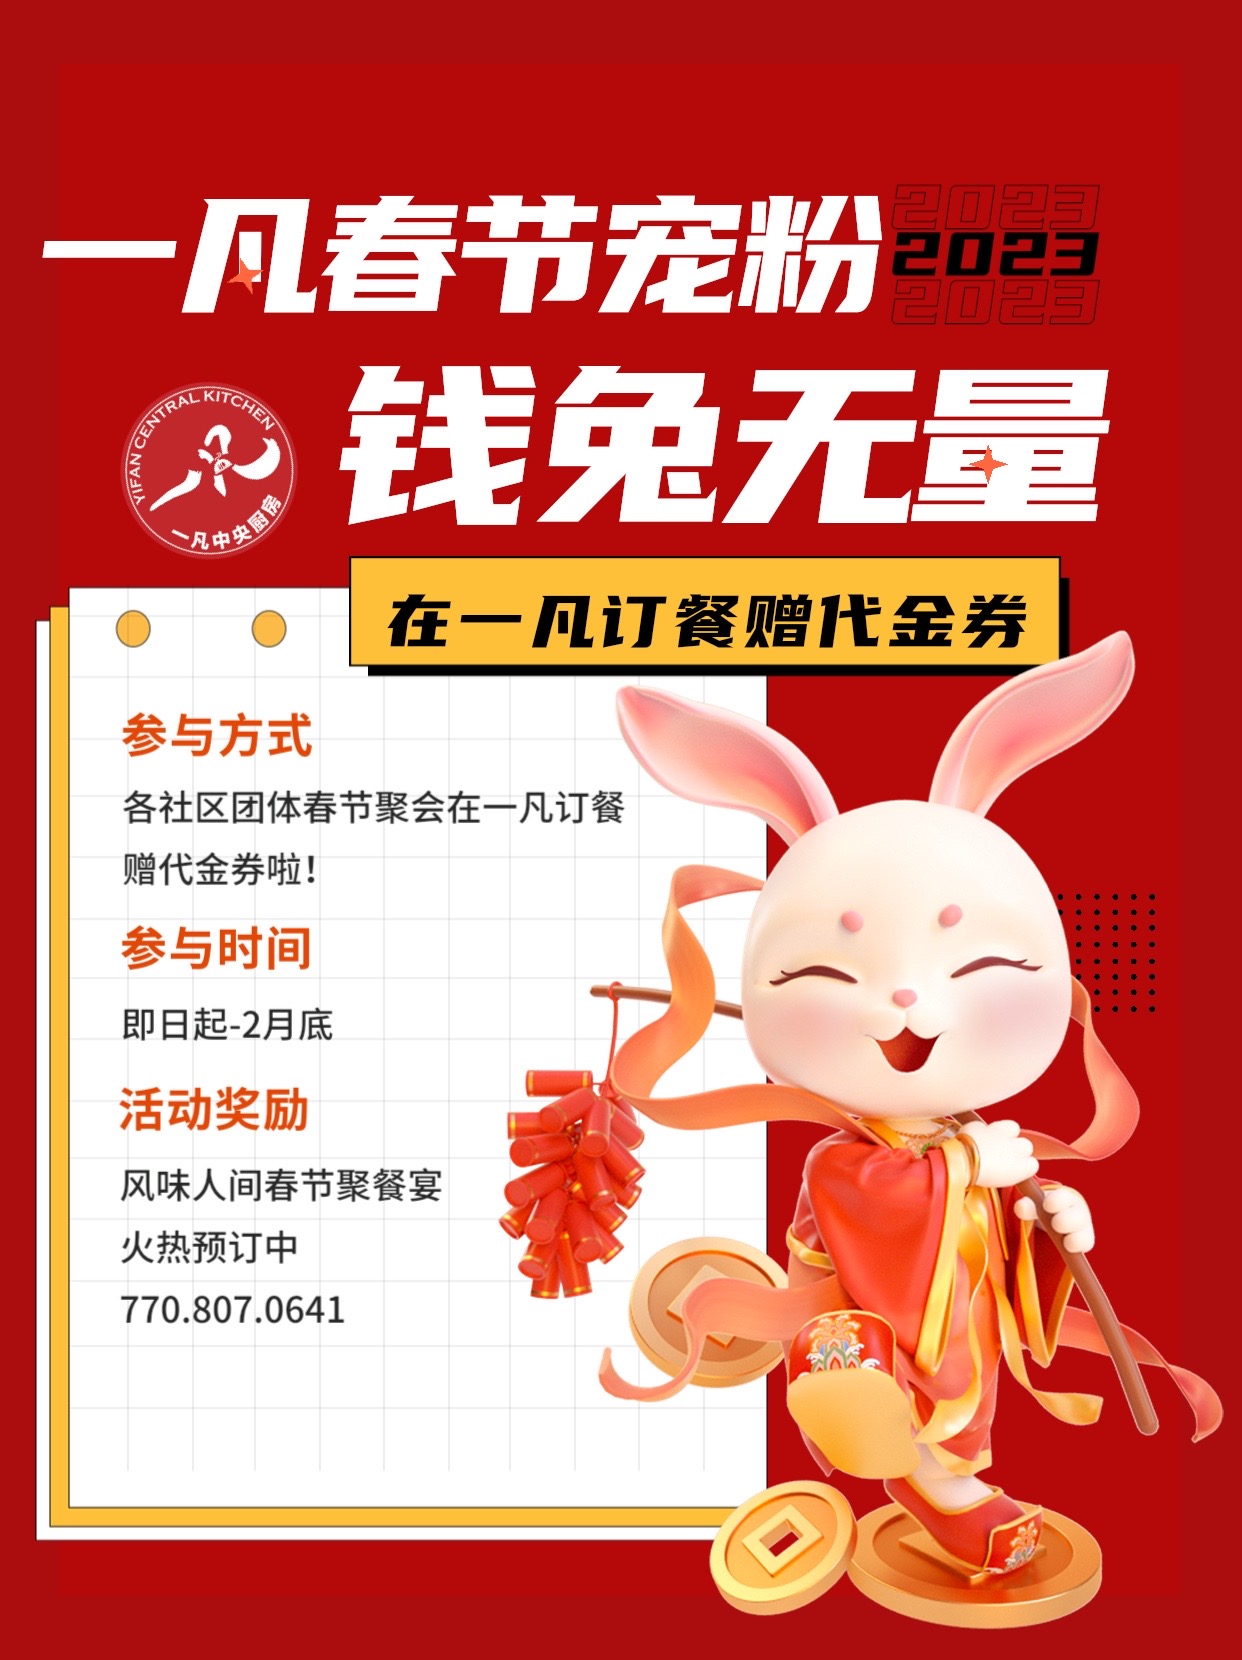 2023一凡春节钱兔无量—火热订餐中！